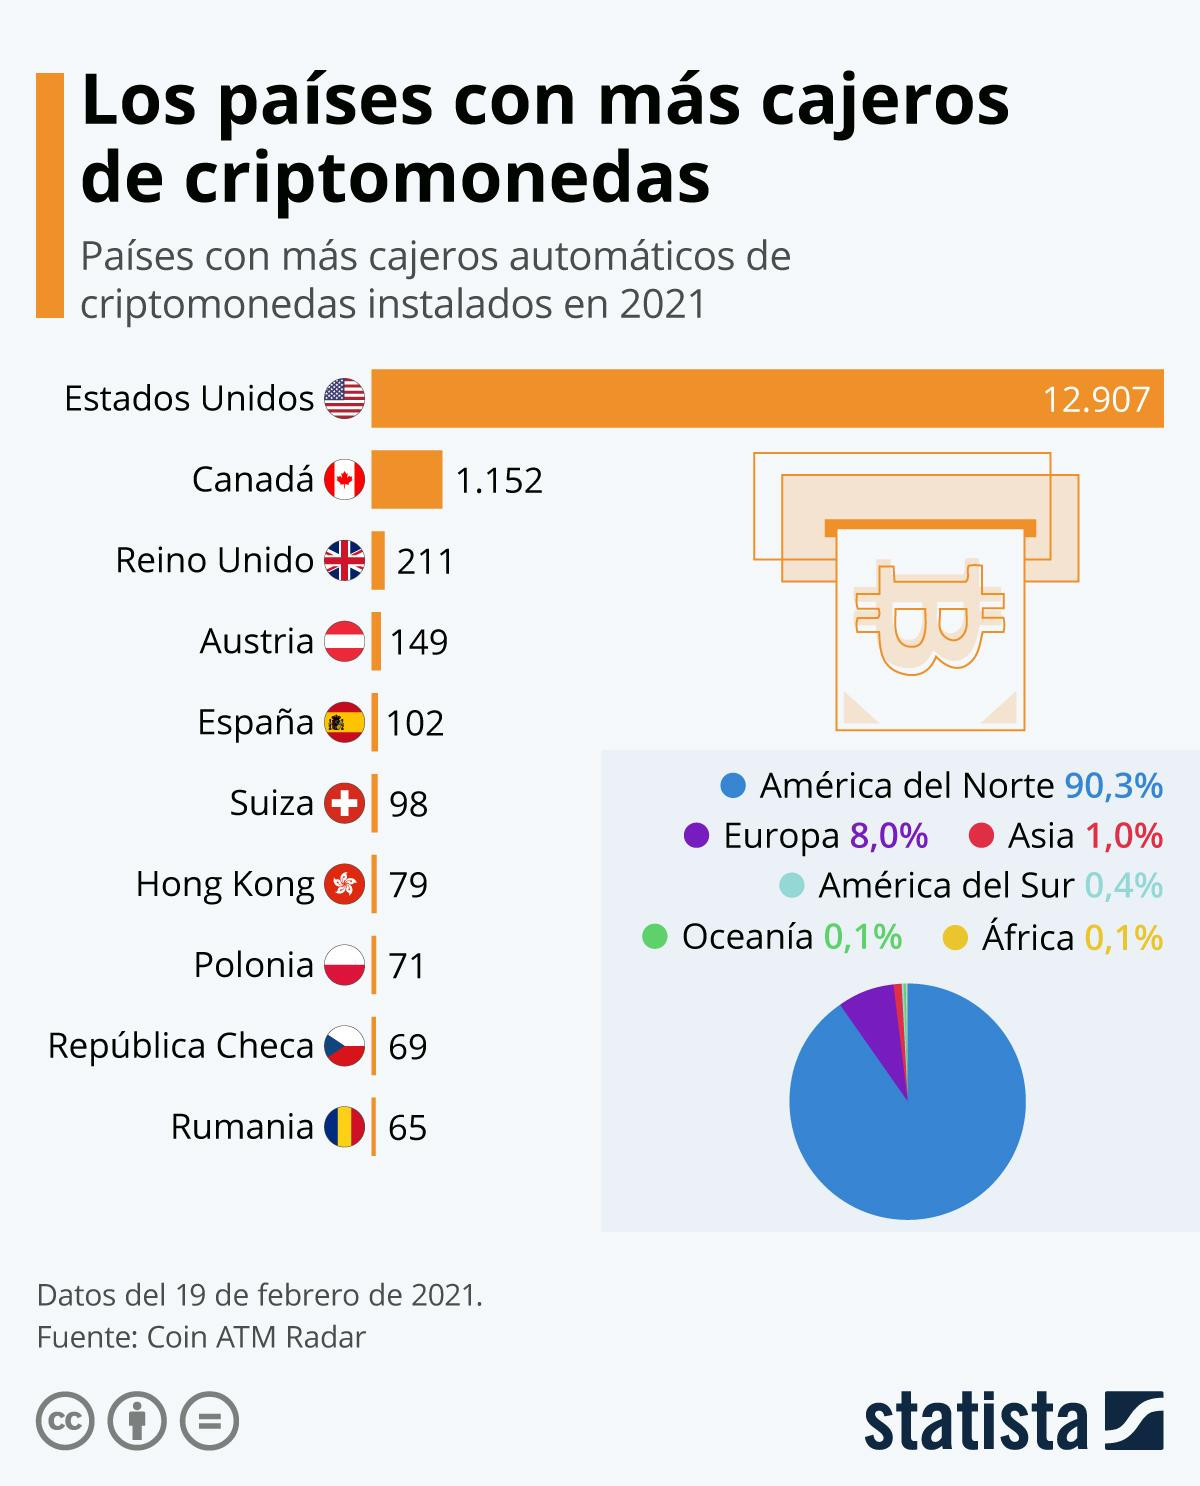 Países con más cajeros de criptomonedas / STATISTA - COIN ATM RADAR